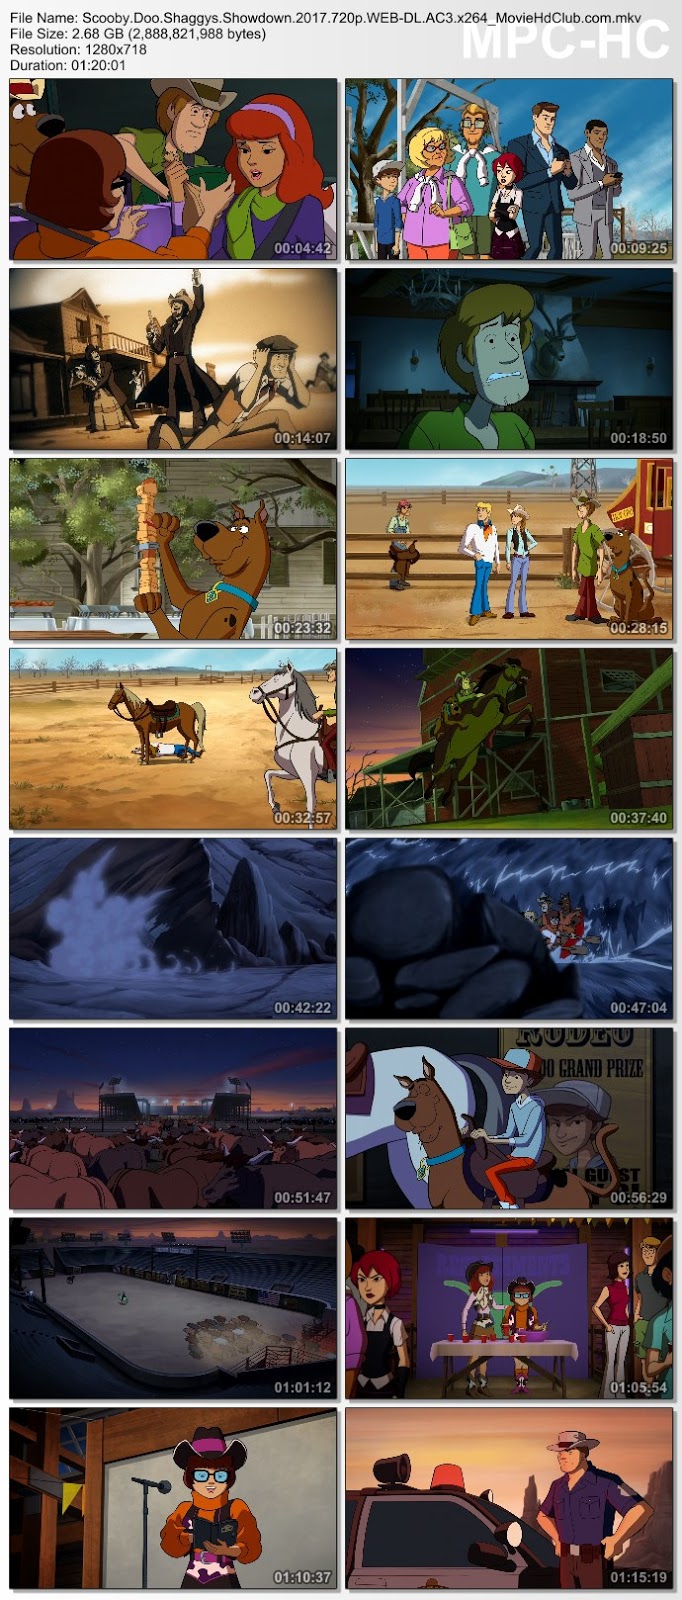 {ใหม่! เสียงซับมาสเตอร์}[Mini-HQ] Scooby-Doo! Shaggy's Showdown (2017) - สคูบี้ดู ตำนานผีตระ-( ไม่เอาไม่พูด )-ลแชกกี้ [720p][เสียง:ไทย 5.1/Eng 5.1][ซับ:ไทย/Eng][.MKV][2.69GB] SD_MovieHdClub_SS